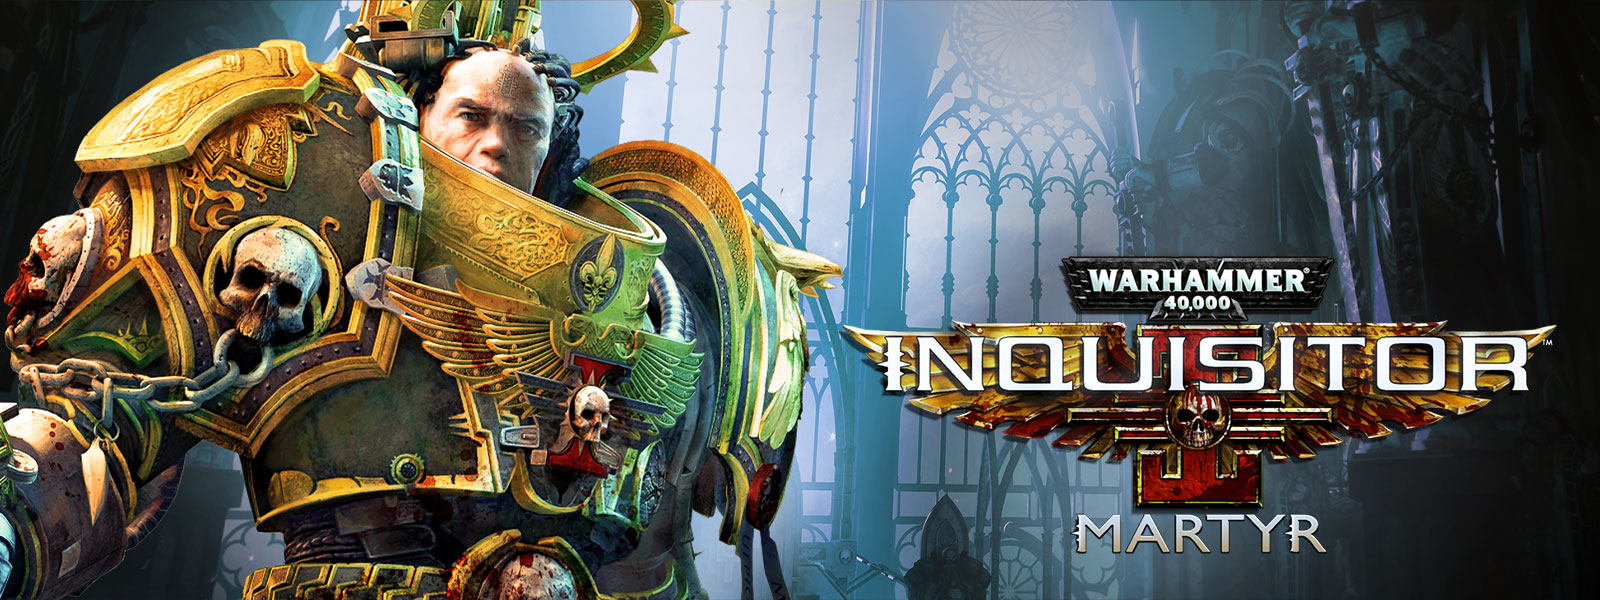 Warhammer 40,000: Inquisitor, Martyr, Inkvizitor stojí v extravagantní katedrále.